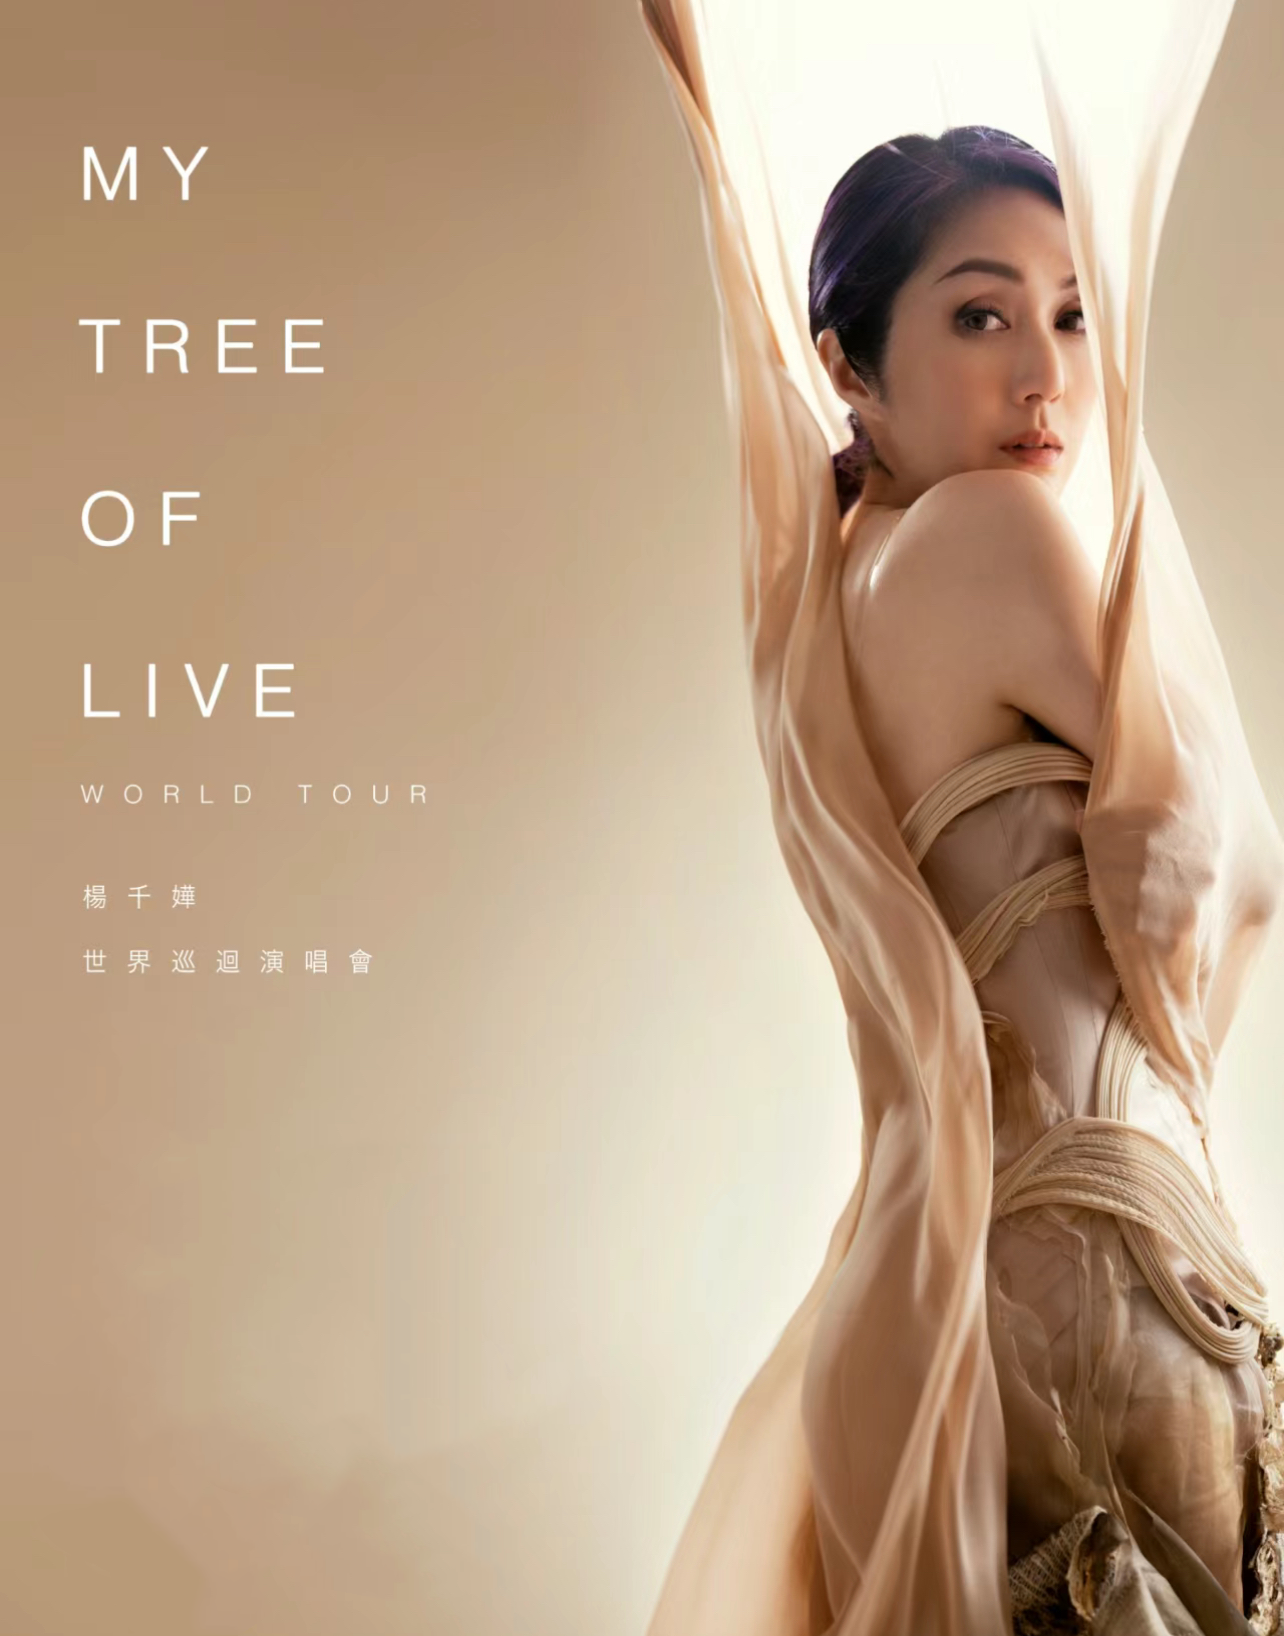 [上海]杨千嬅MY TREE OF LIVE世界巡回演唱会-上海站